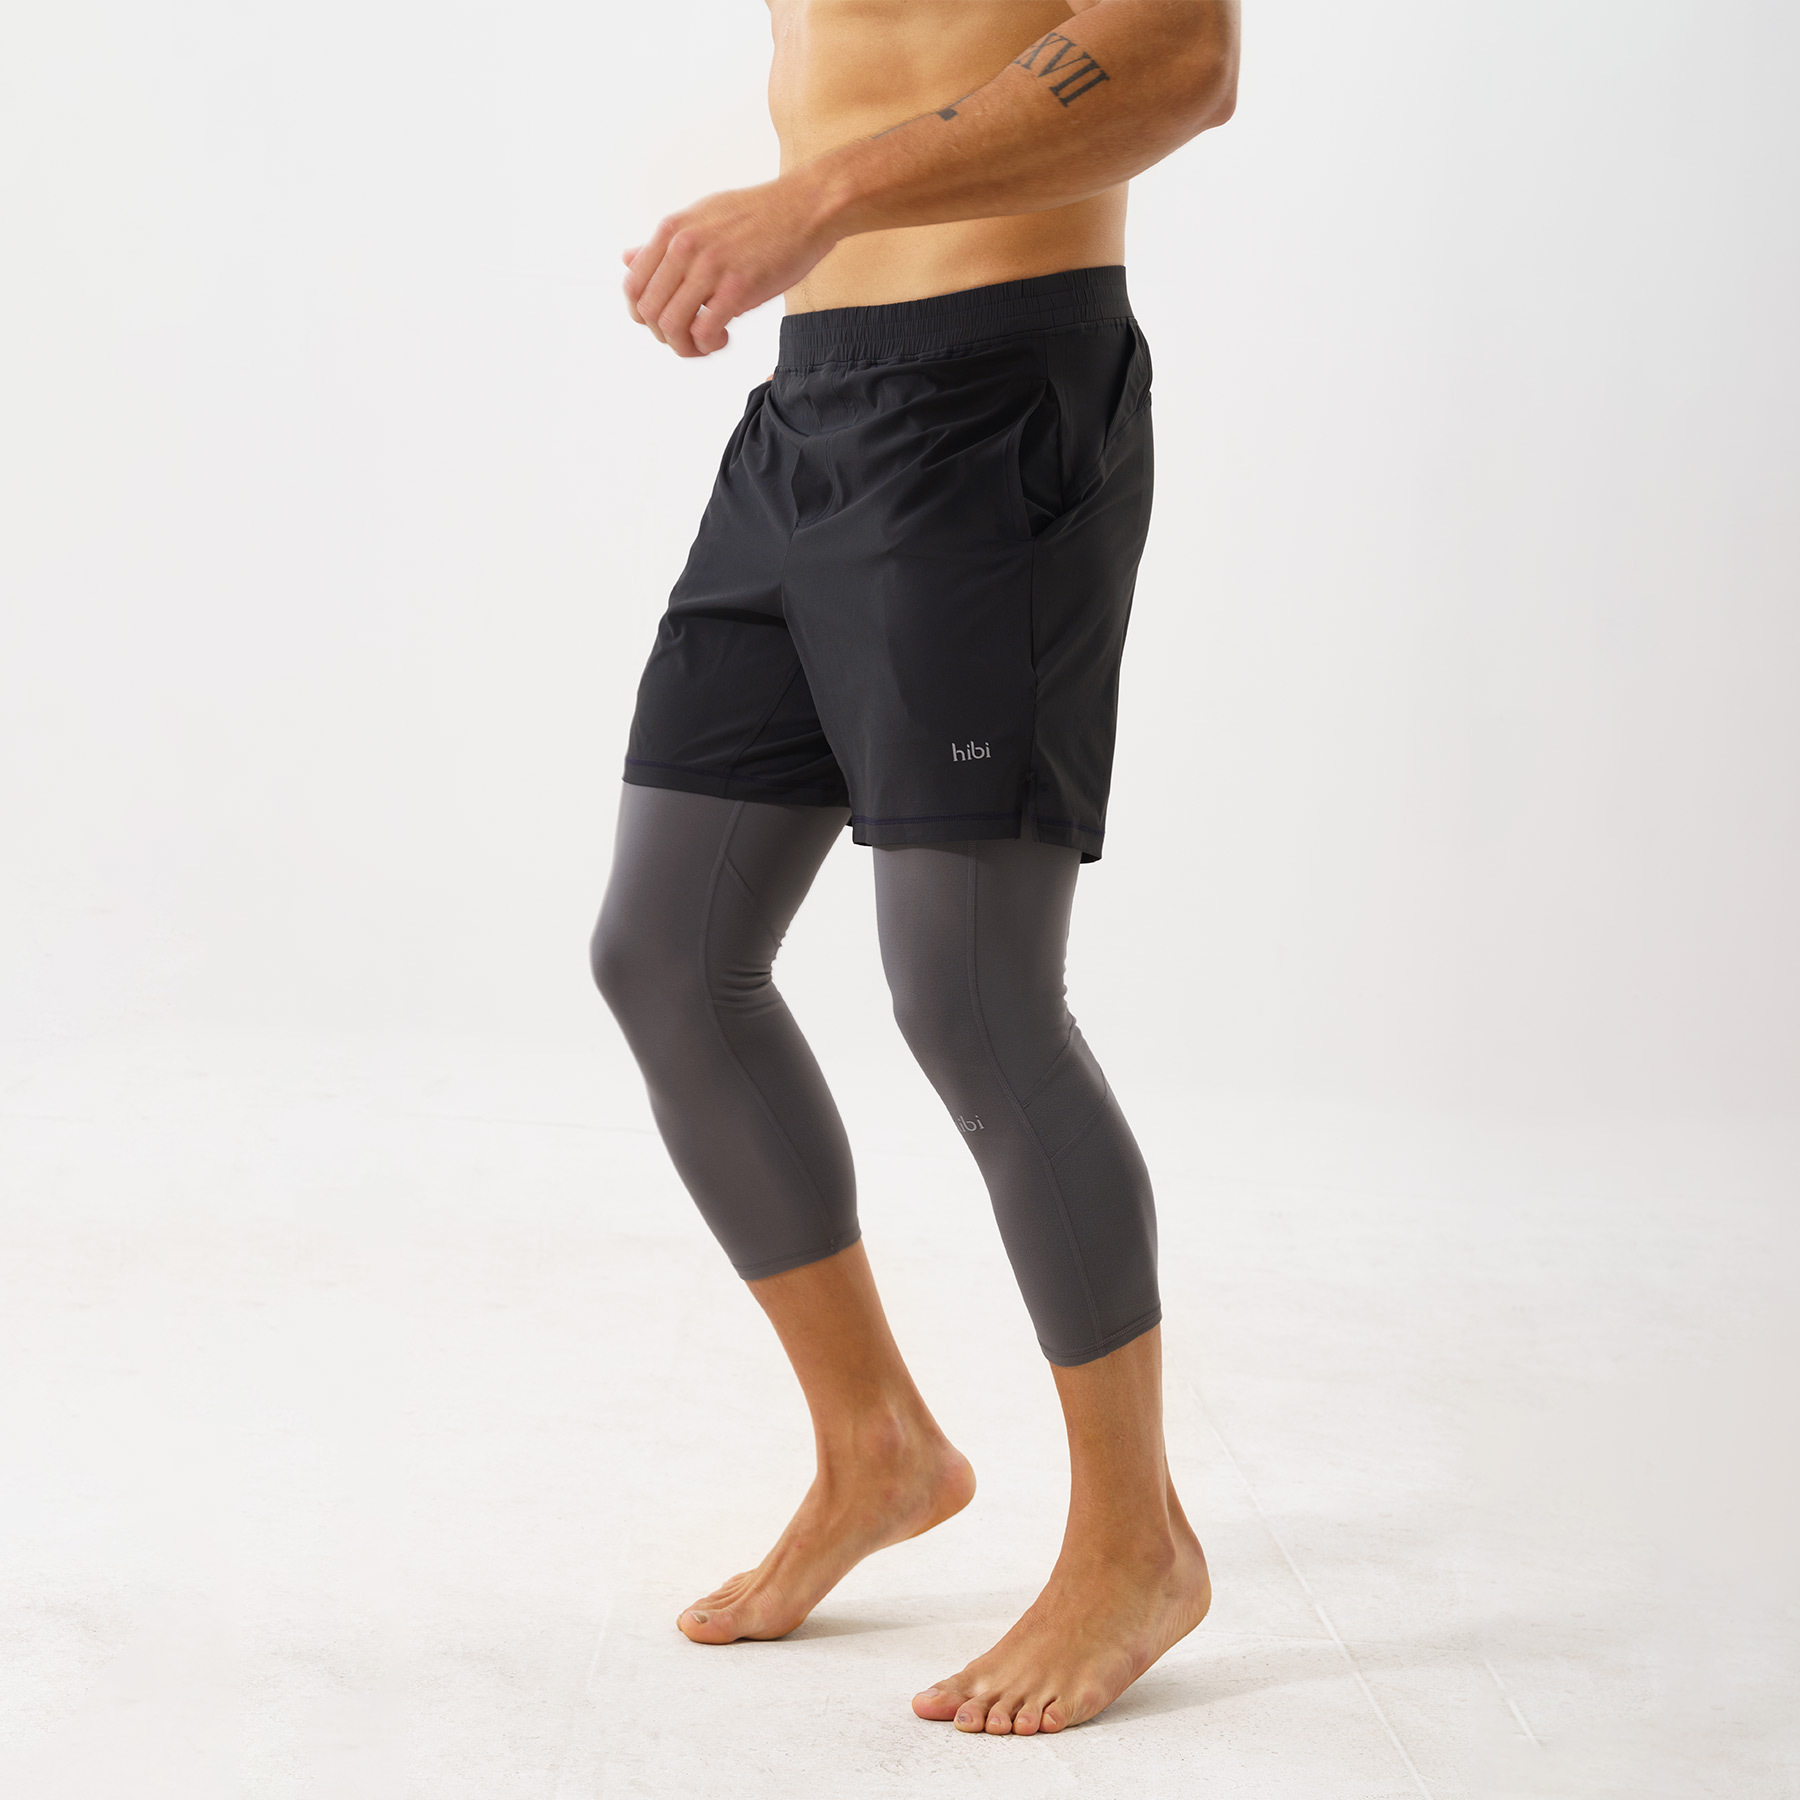 Quần leggings tập gym cho nam Hibi Sports M104 - Loại lửng 3/4 không túi